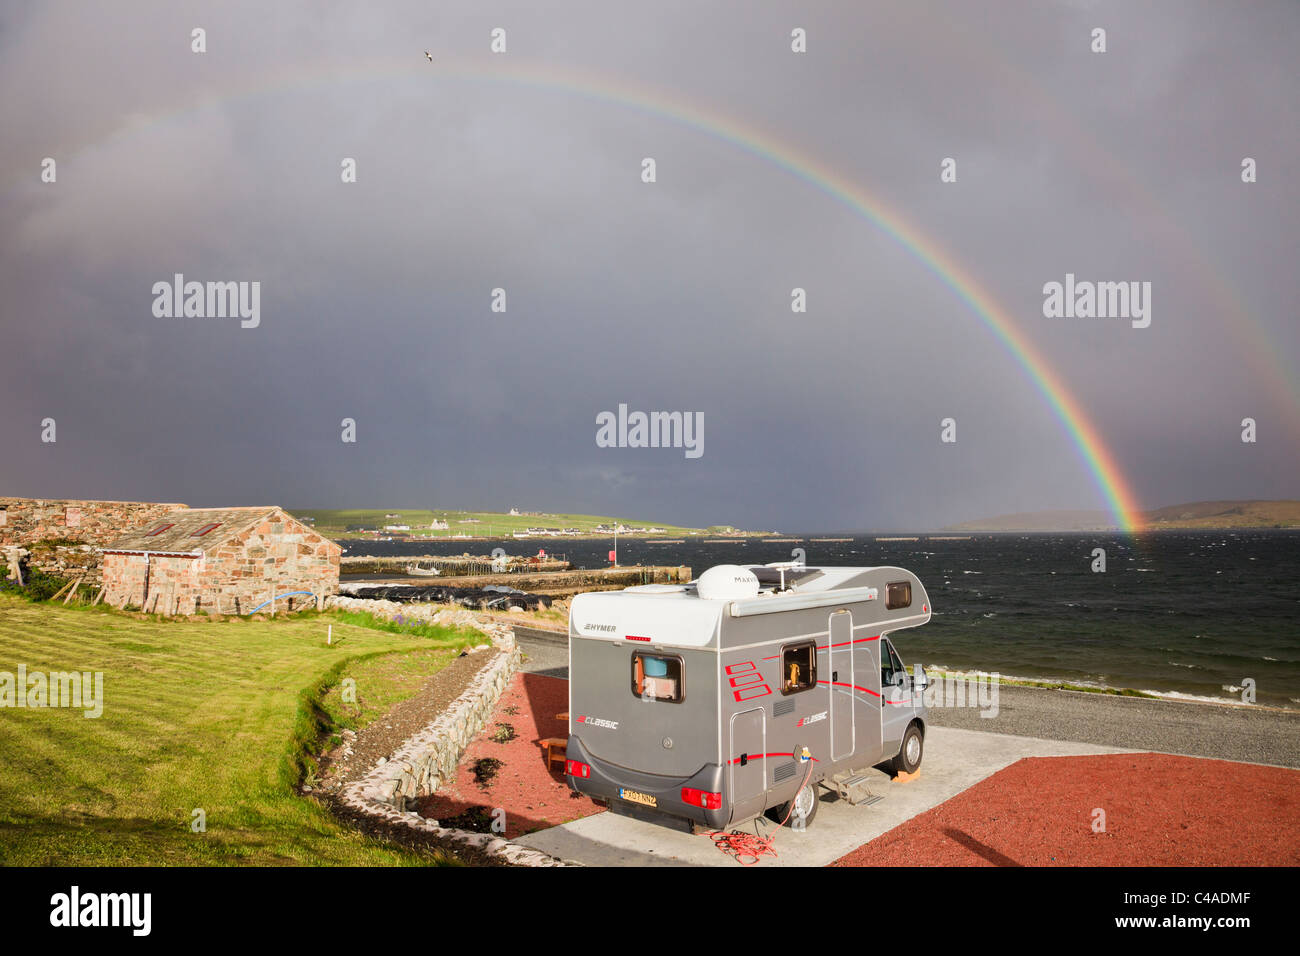 Reisemobil in Gardiesfauld Jugendherberge Campingplatz mit Rainbow und dunkle Wolken im Sommer. Uyeasound, Insel Unst, Shetlandinseln, Schottland, Großbritannien. Stockfoto